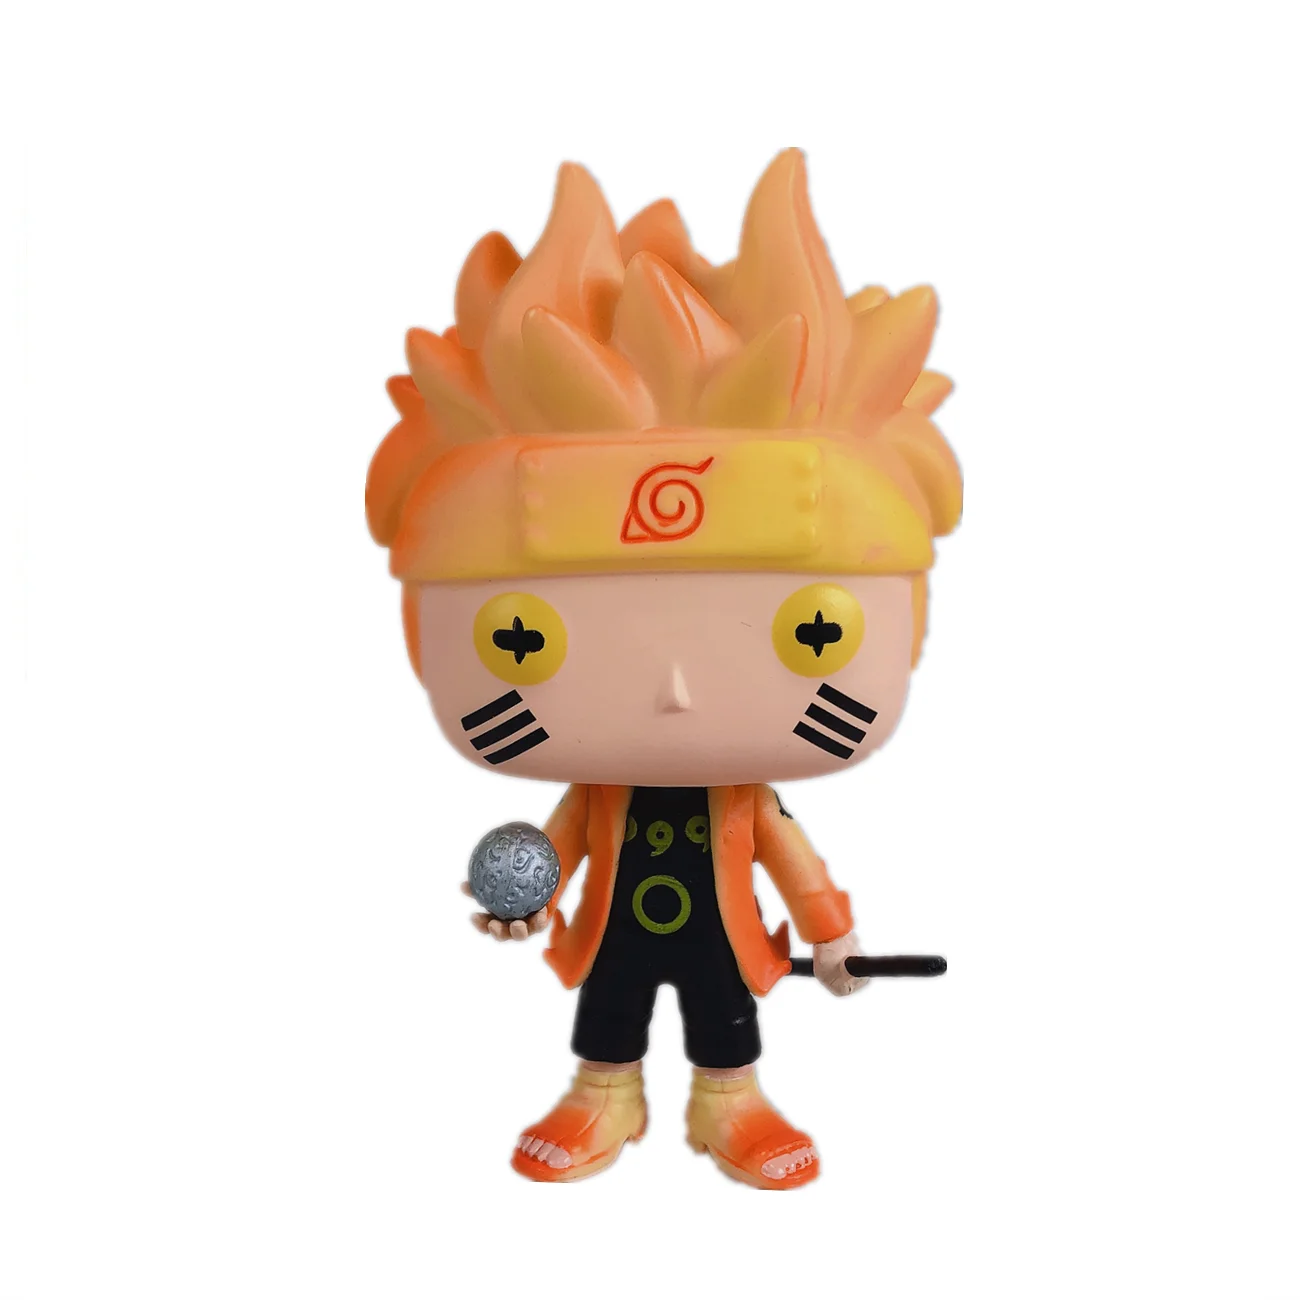 Naruto ナルト プラスチック玩具ギフトメーカーカスタマイズ図面サンプルカスタマイズoem Buy ナルト人形 おもちゃ Oem Odm 中国メーカー アニメーションのおもちゃ Product On Alibaba Com